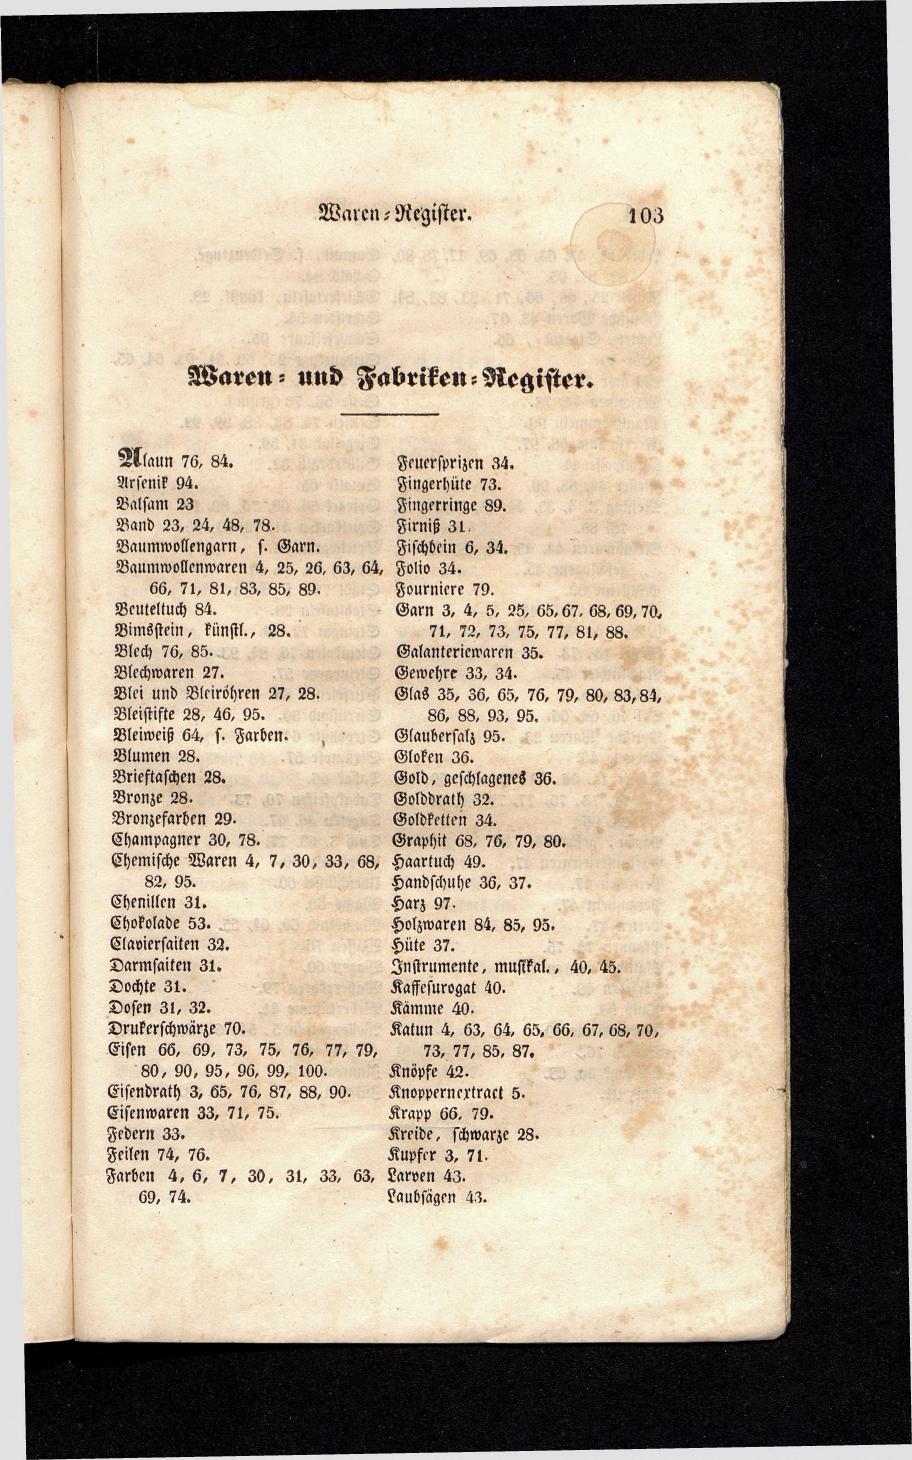 Grosses Adressbuch der Kaufleute. No. 13. Oesterreich ober u. unter der Enns 1844 - Seite 107